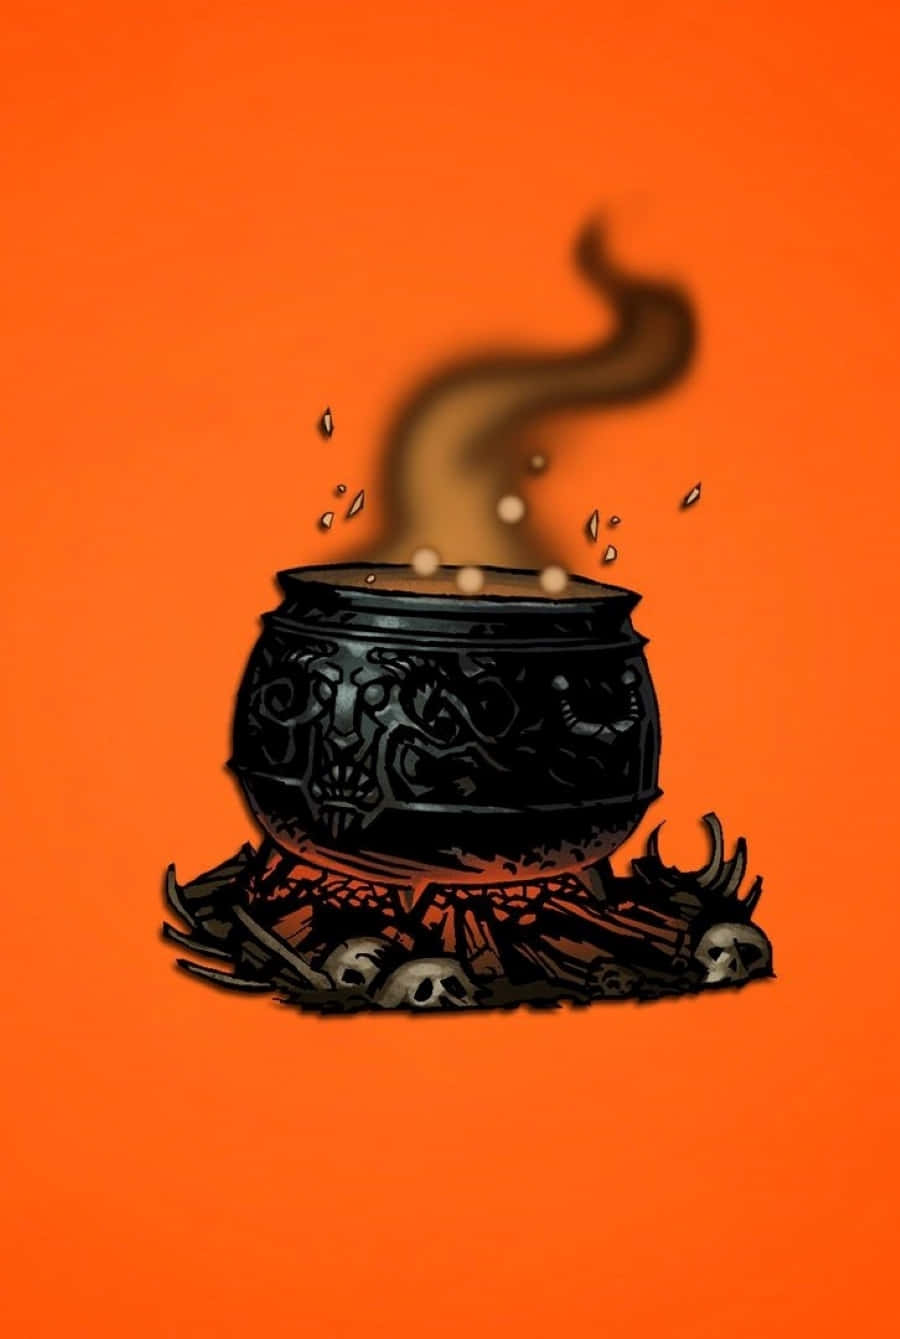 Magical Cauldron Casting a Spell Wallpaper